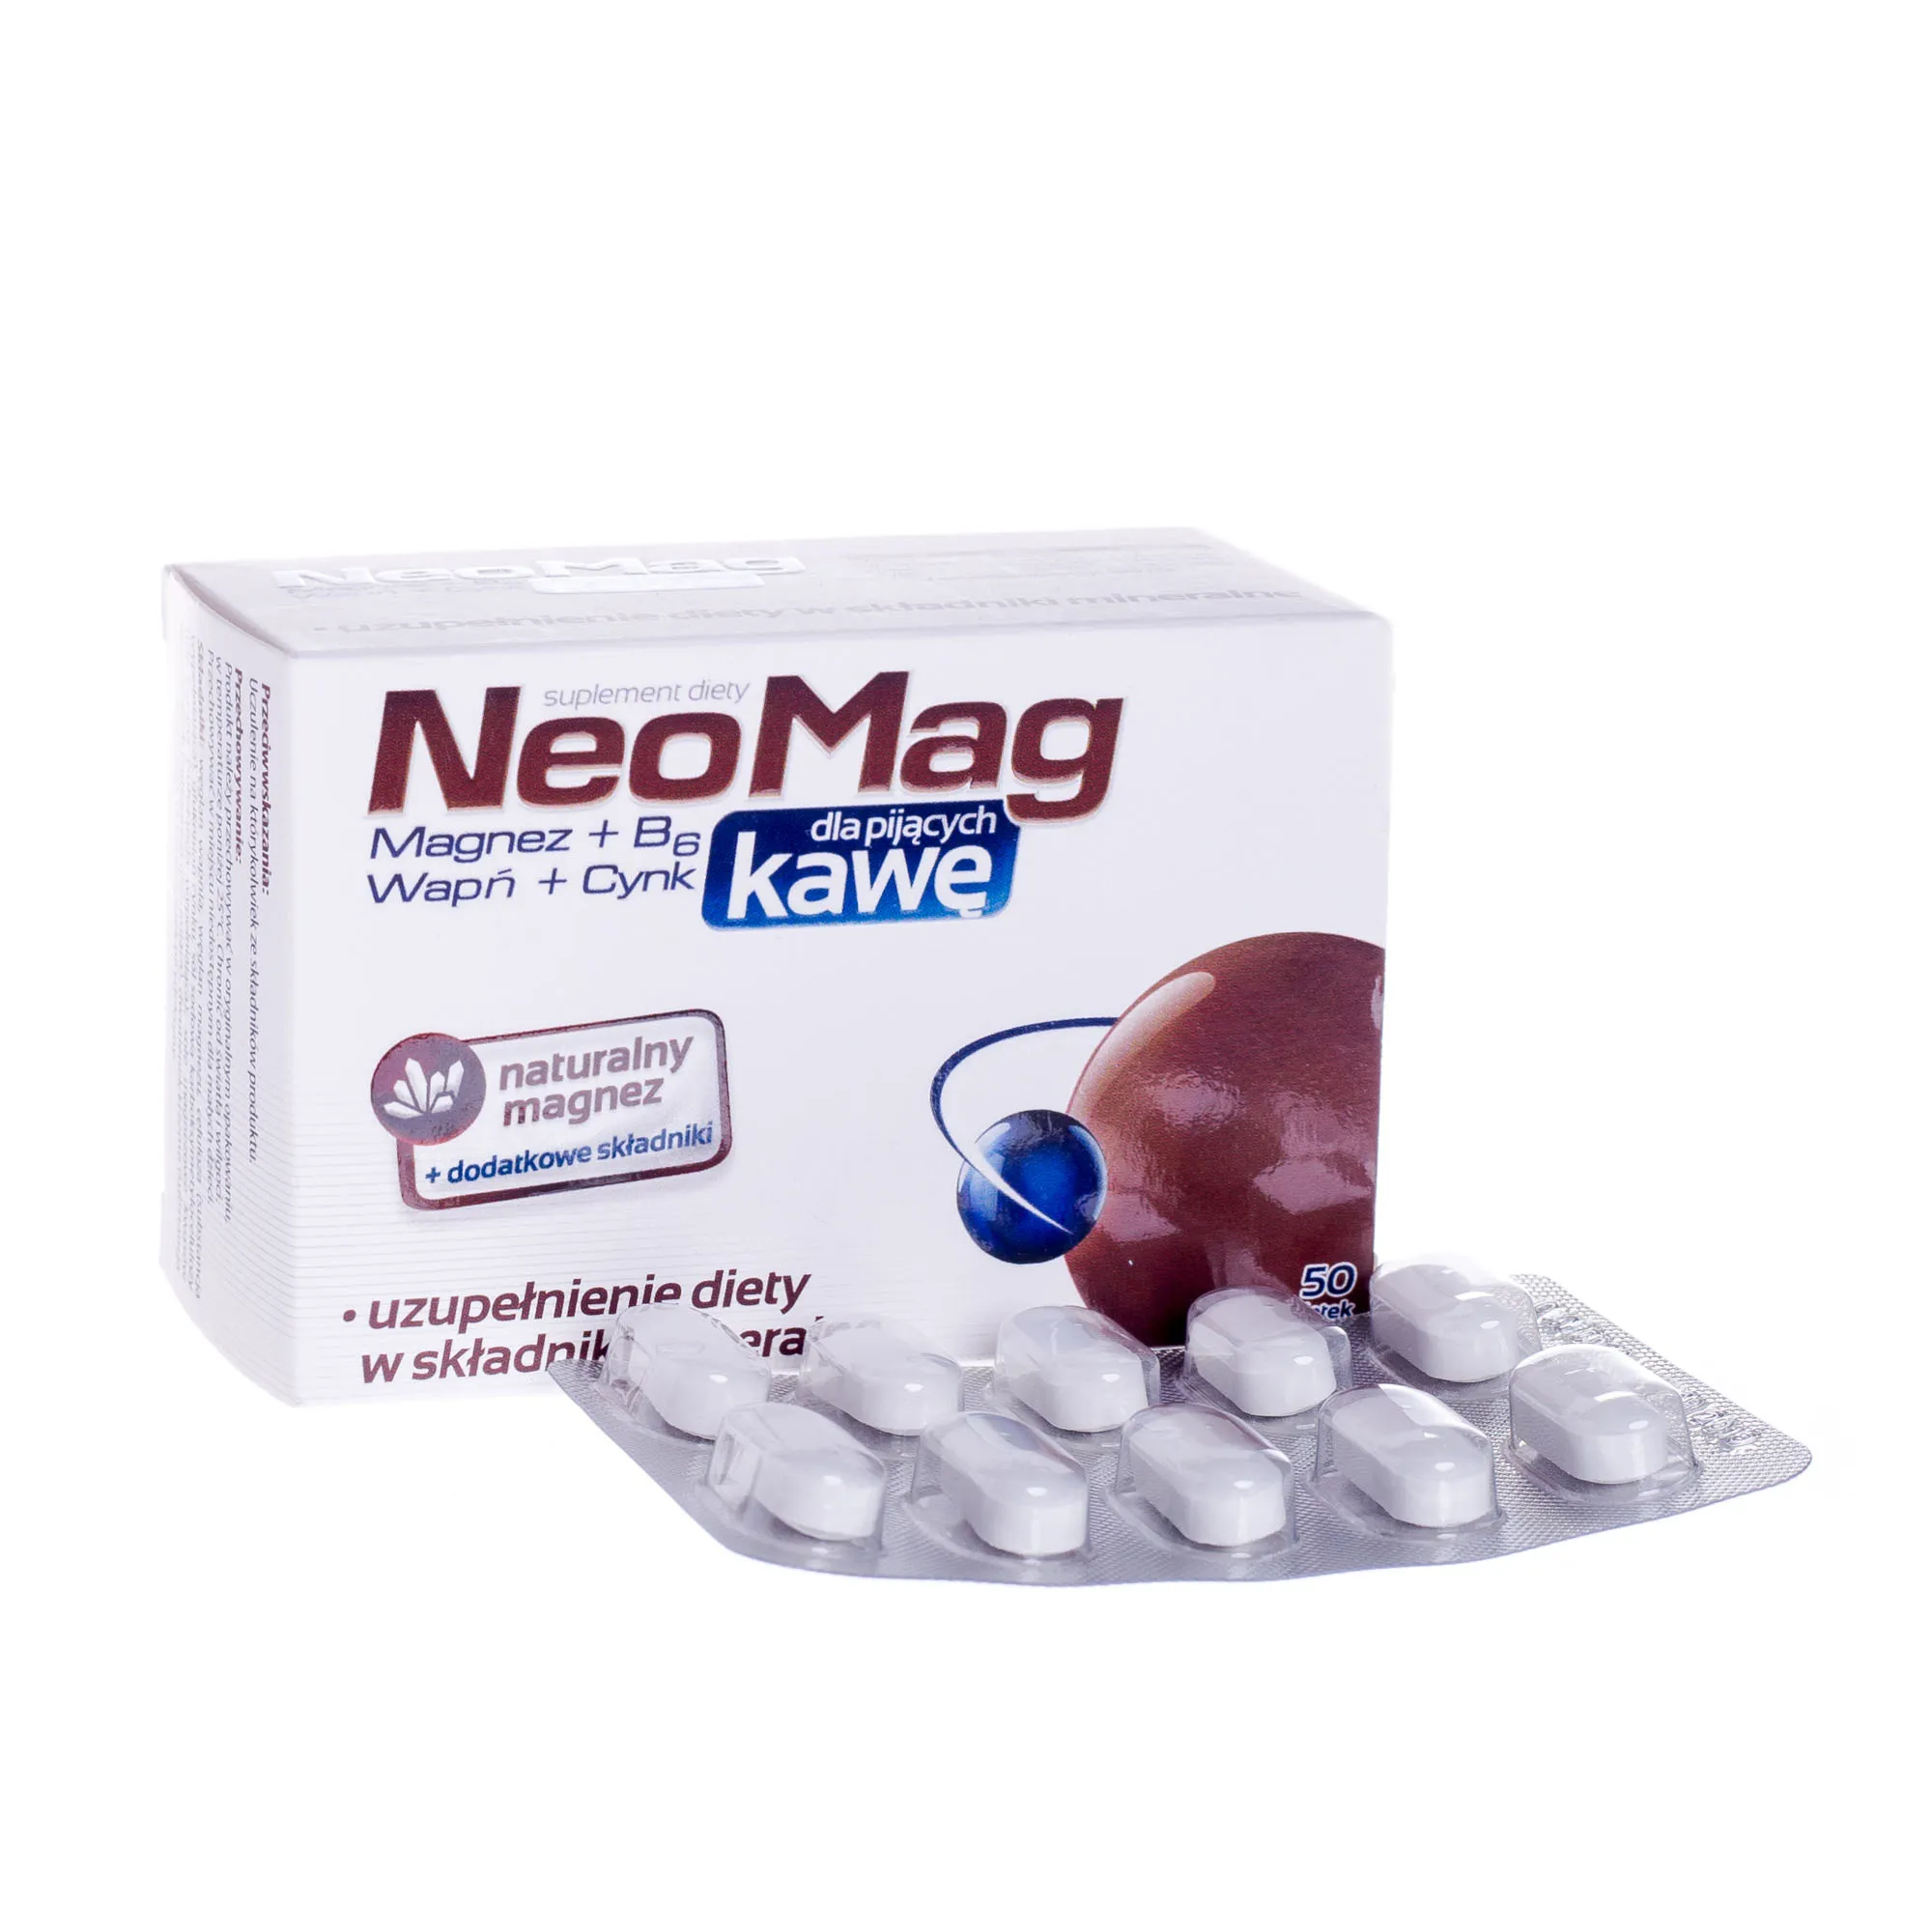 NeoMag dla pijących kawę, suplement diety, 50 tabletek